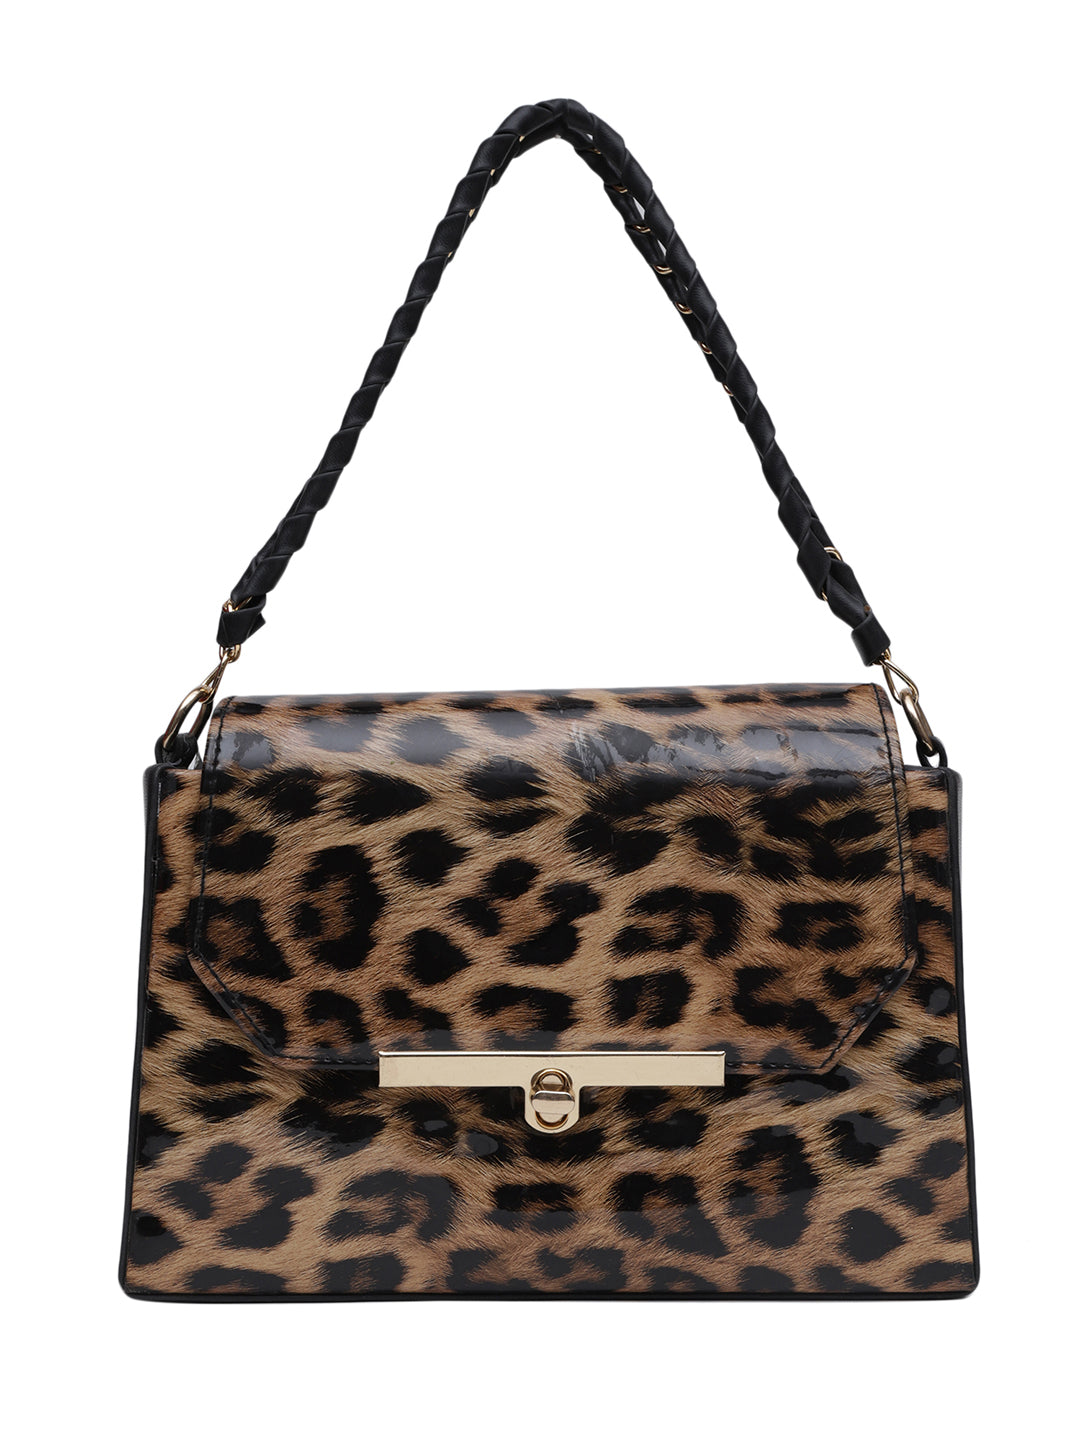 MINI WESST Brown Casual Animal Handheld Bag(MWHB163PR)